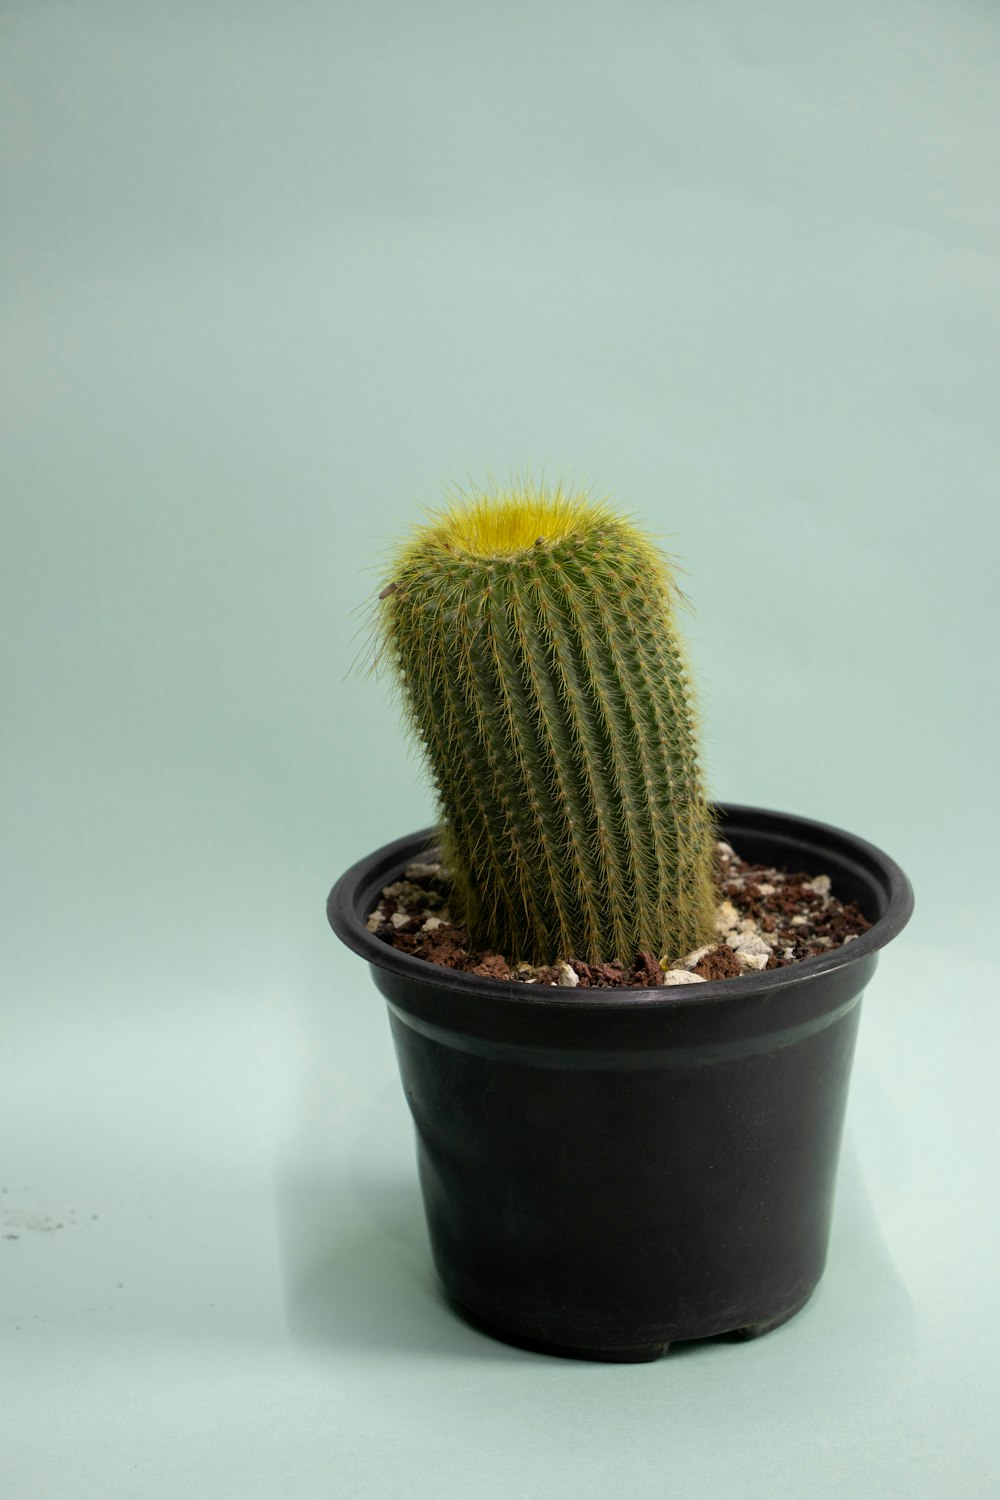 Ein kleiner Kaktus in einem schwarzen Topf